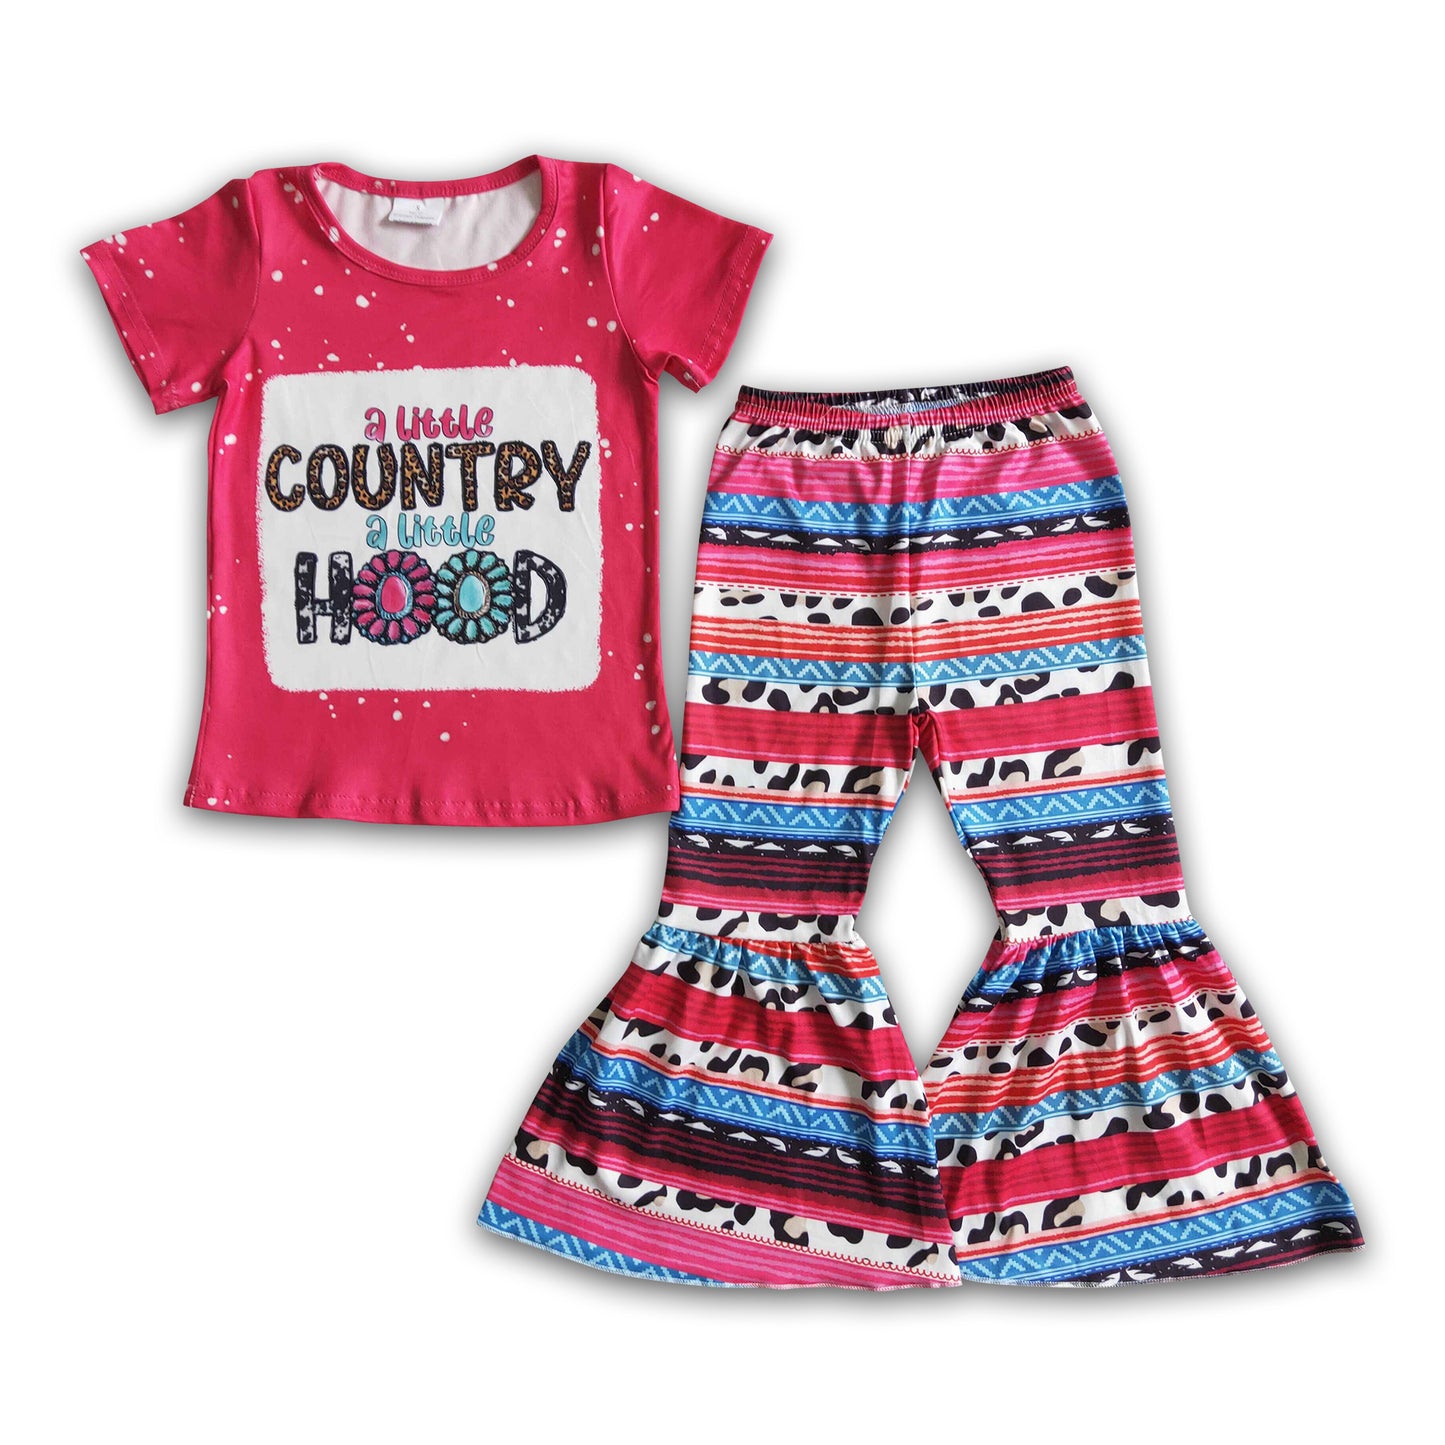 A little country a little hood shirt serape pants girls western clothing set